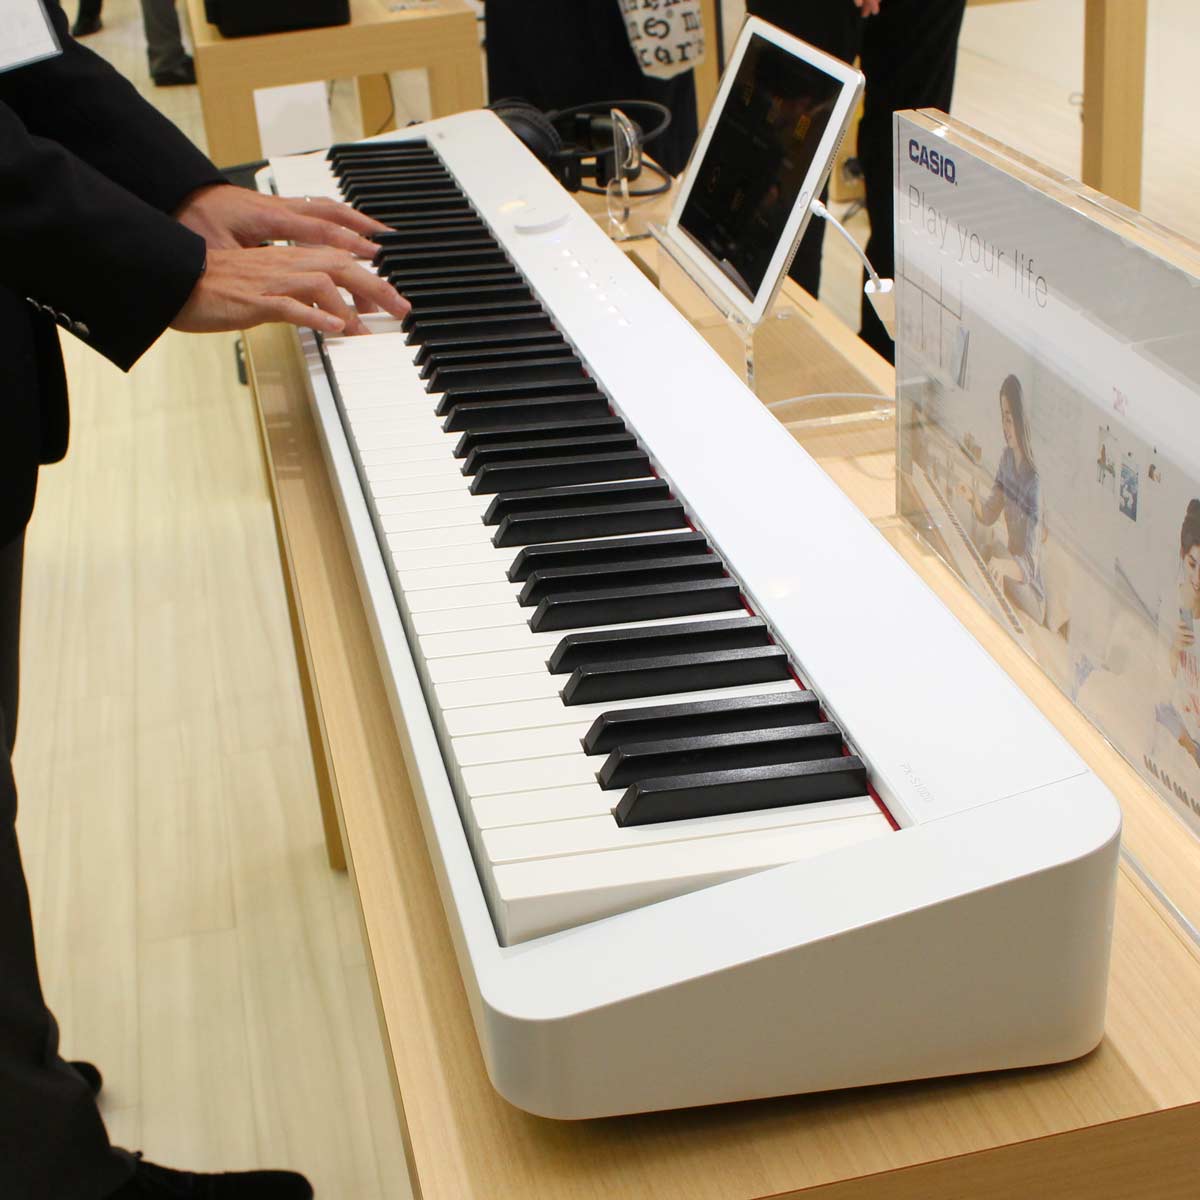 マジでスリム カシオ Px S1000 は机にスッキリ置きやすい鍵電子ピアノ 価格 Comマガジン